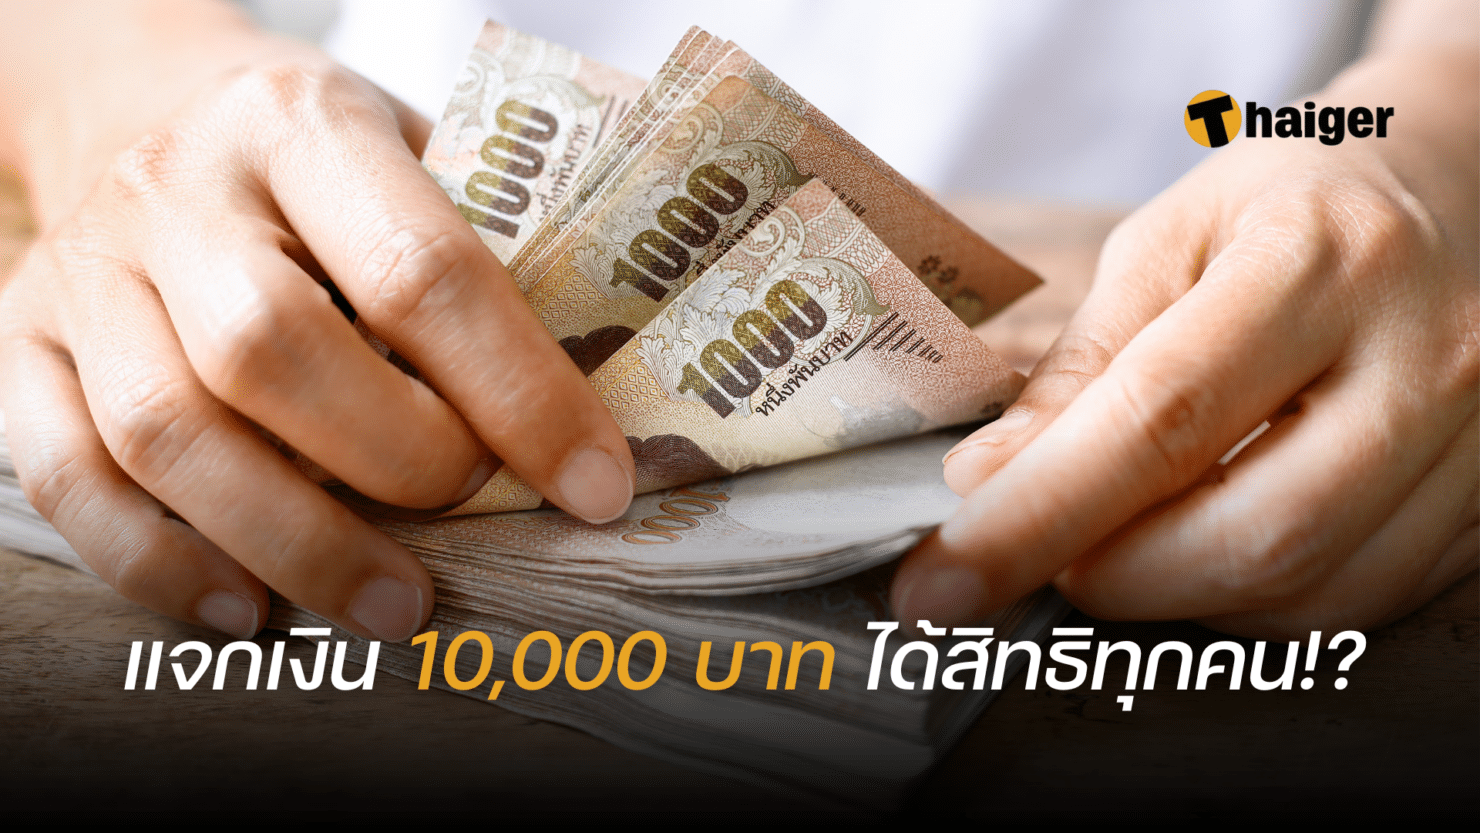 คลังตอบแล้ว แจกเงิน 10,000 บาท ได้รับสิทธิทุกคน ซื้ออะไรก็ได้จริงไหม? |  Thaiger ข่าวไทย